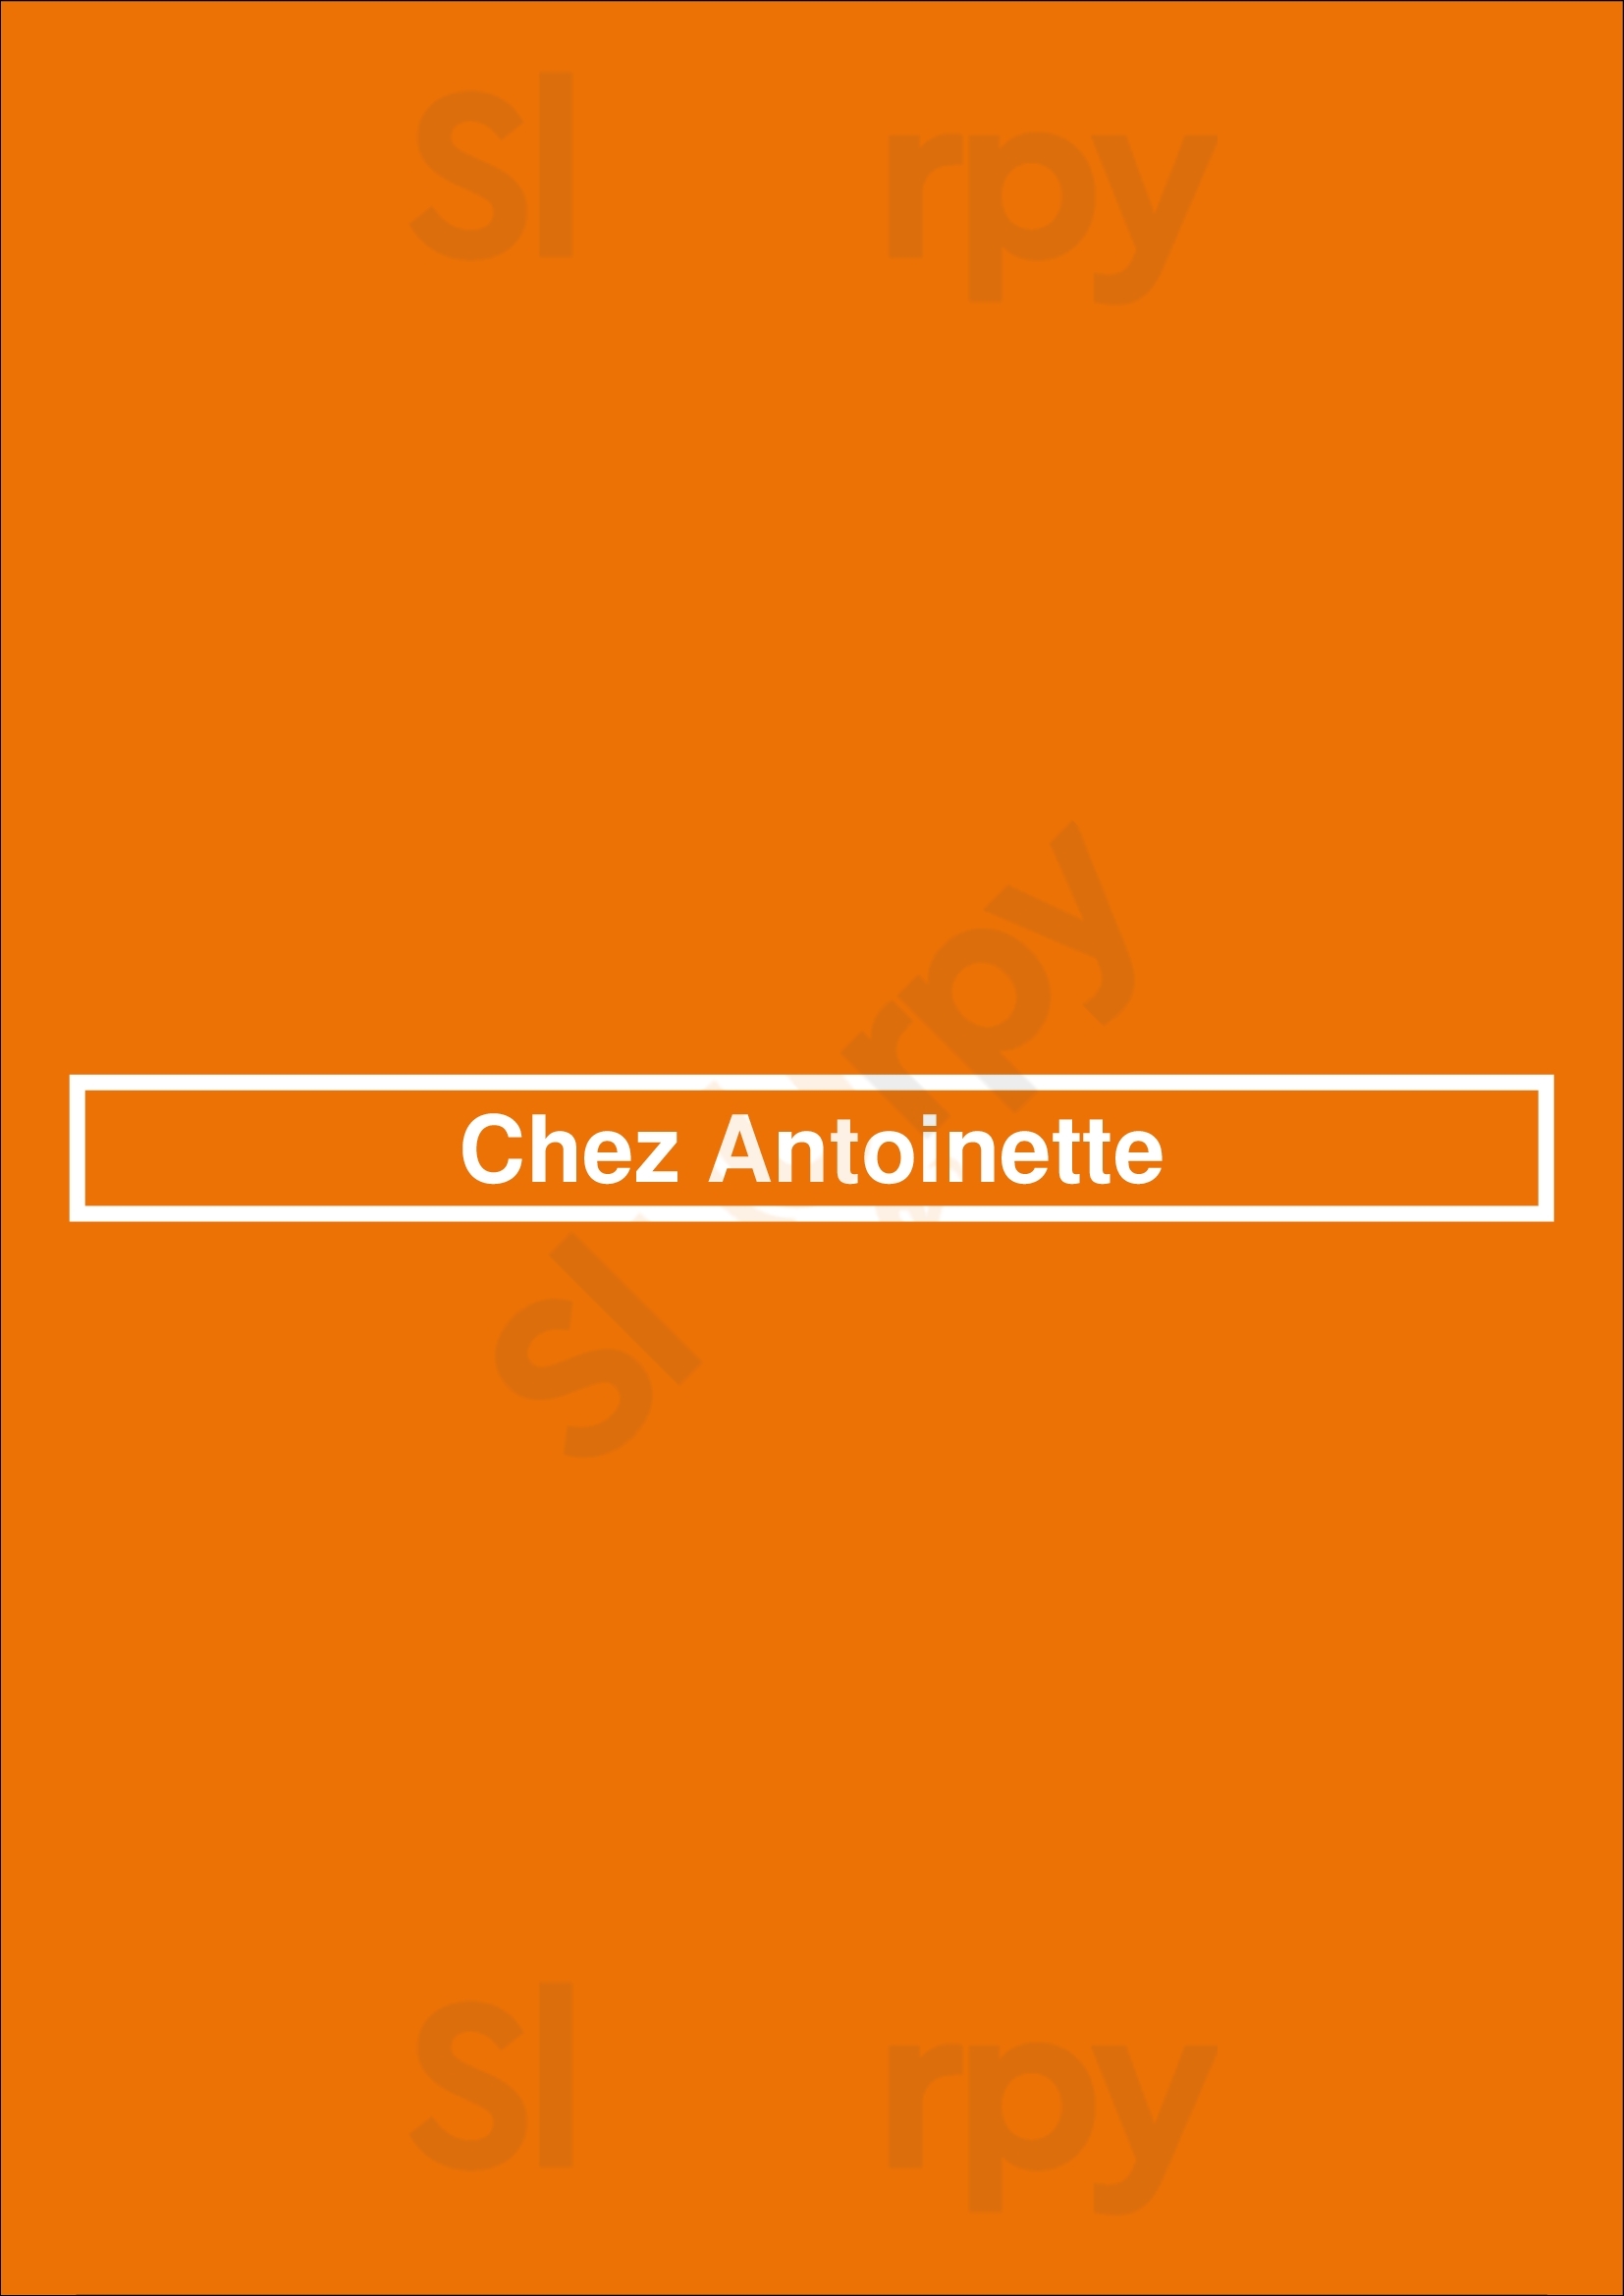 Chez Antoinette Deventer Menu - 1